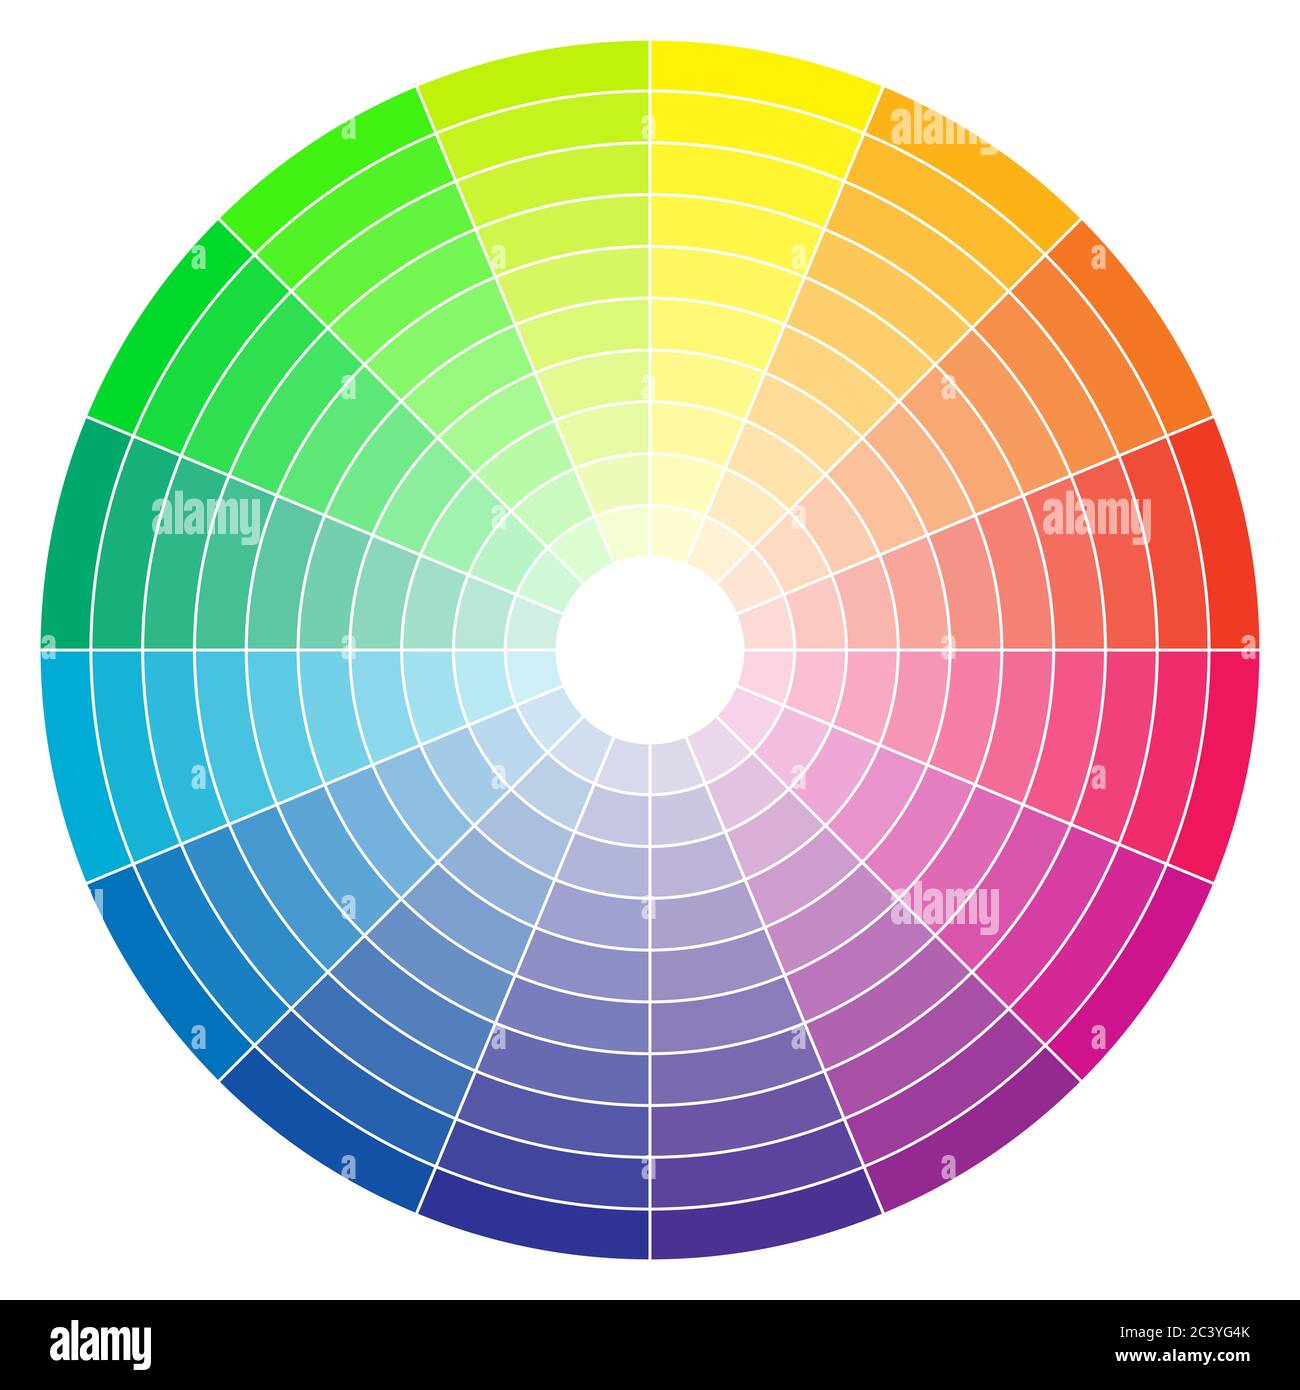 Bánh xe phổ màu trừu tượng – Bạn có muốn khám phá màu sắc và sự kết hợp màu sắc? Với hình ảnh bánh xe phổ màu trừu tượng, bạn sẽ được trải nghiệm đầy màu sắc và cảm nhận những sự kết hợp đó như thế nào trong một trải nghiệm trực quan.